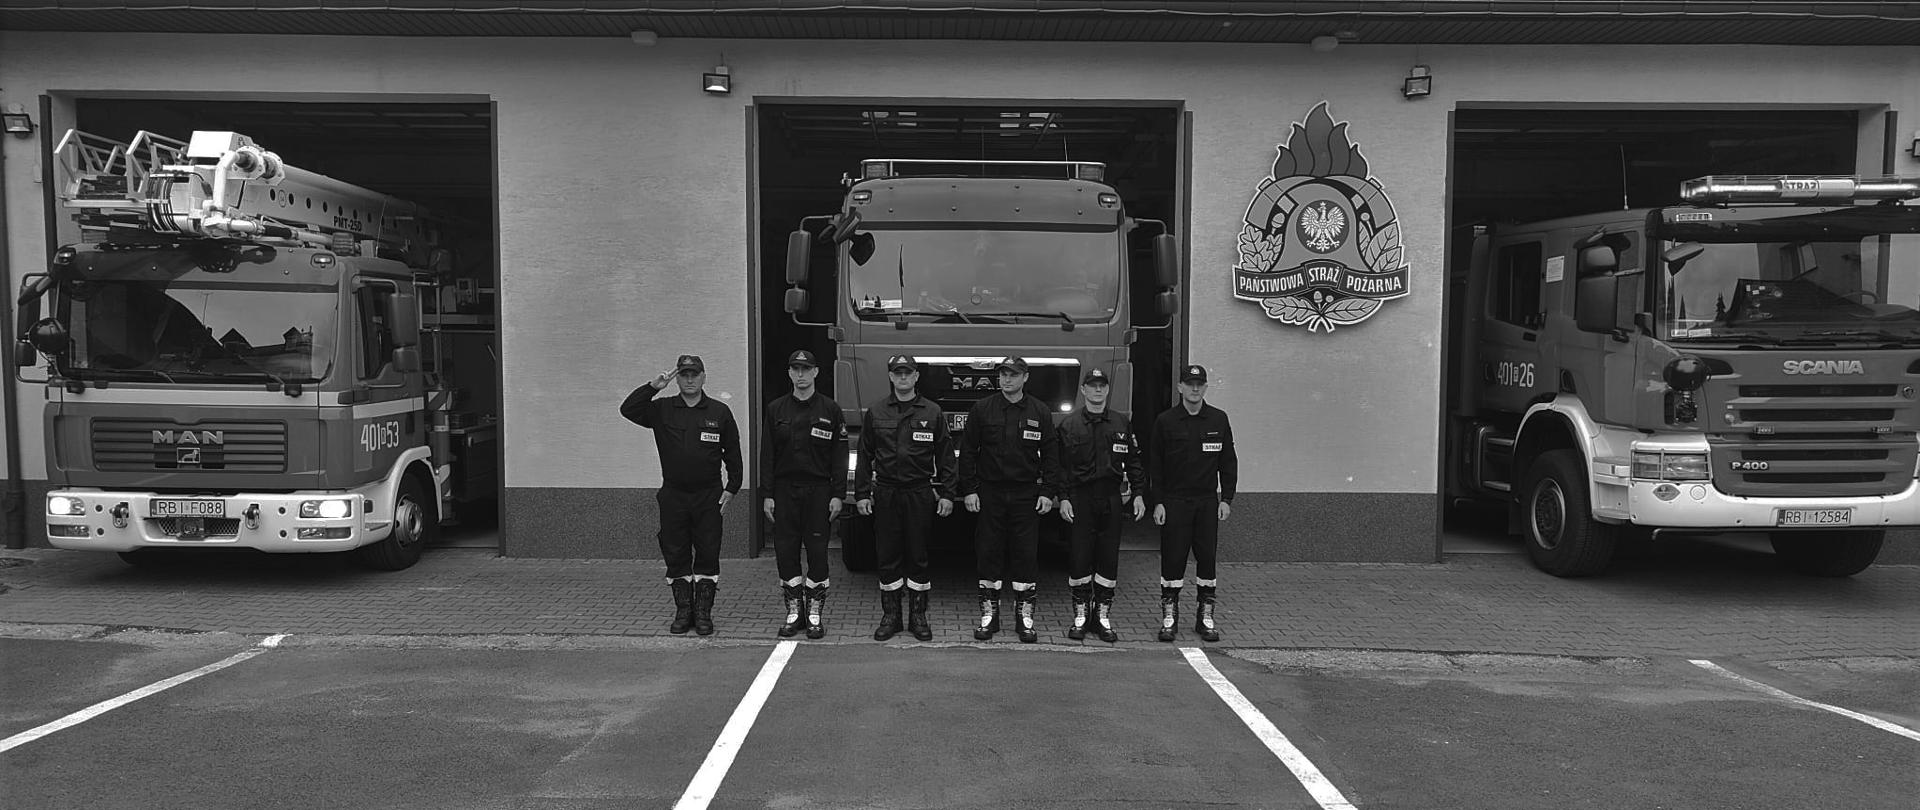 Na zdjęciu widać sześciu strażaków w ubraniach koszarowych na placu zewnętrznym, którzy stoją przed garażami KP PSP w Ustrzykach Dolnych. Dowódca oddaje honor, z tyłu widać pojazdy strażackie które mają włączone sygnały świetlne.